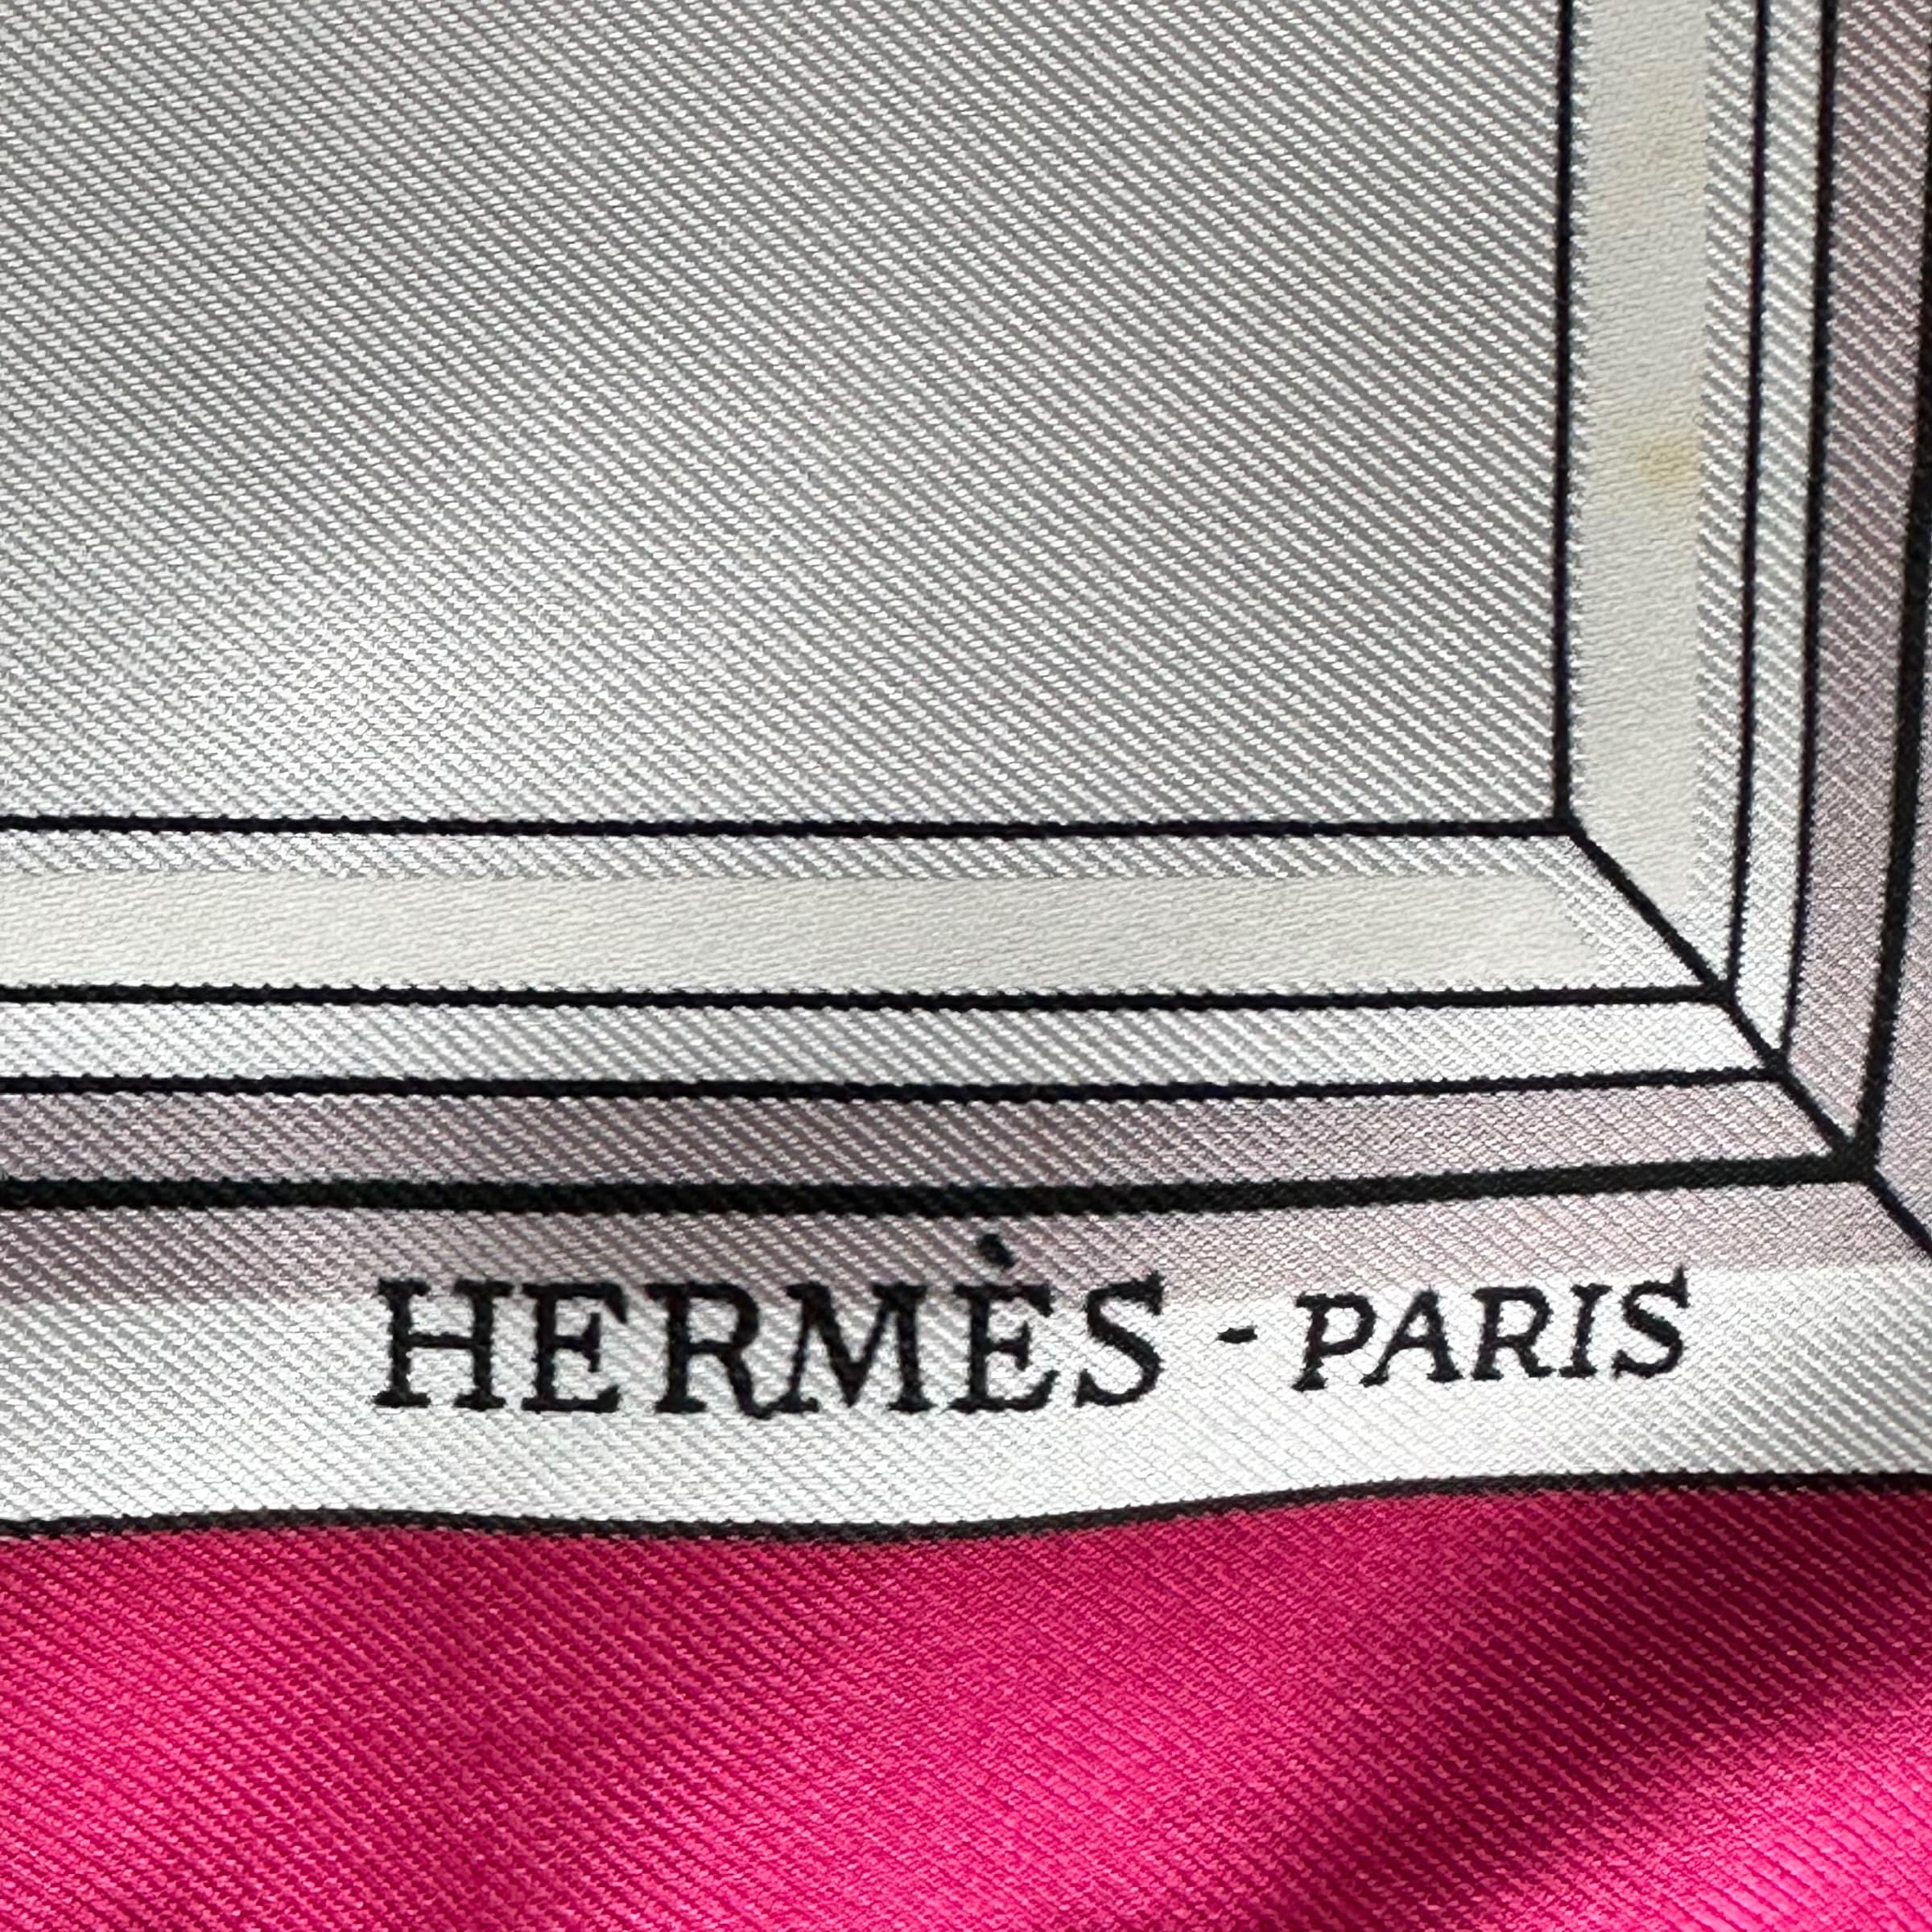 logo de la marque hermes paris en bas du foulard